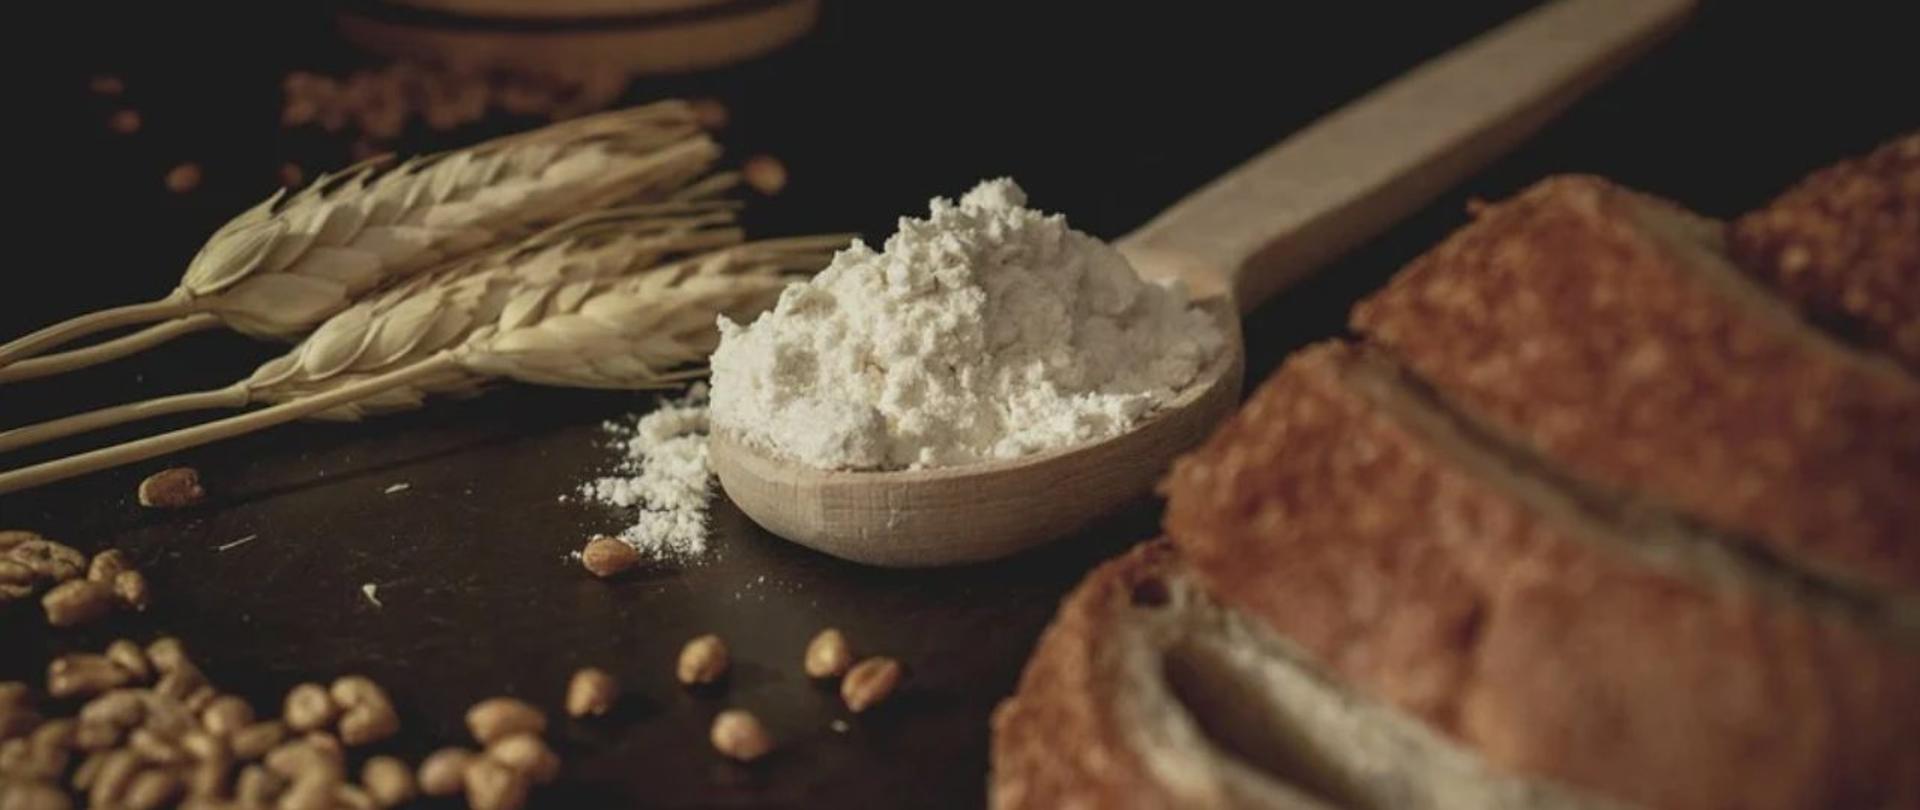 Zdjęcie przedstawia kłosy i ziarna zboża, łyżkę mąki, oraz kawałek chleba